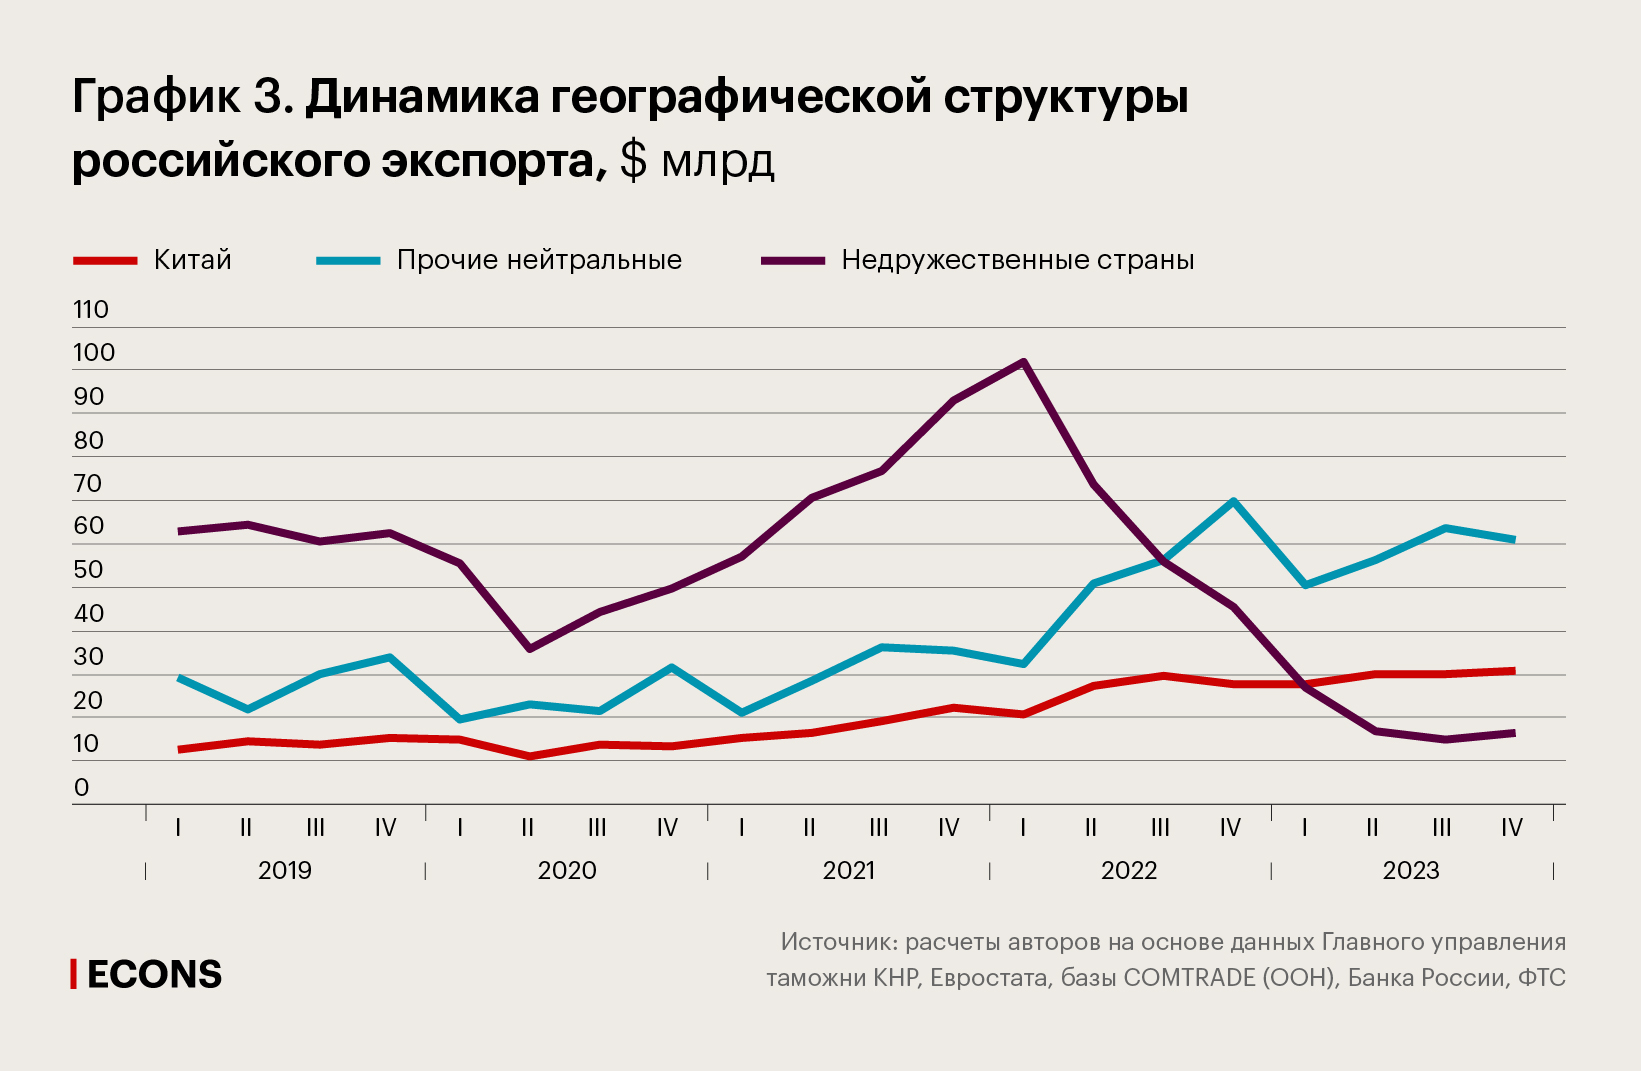 Динамика географической структуры российского экспорта, $ млрд